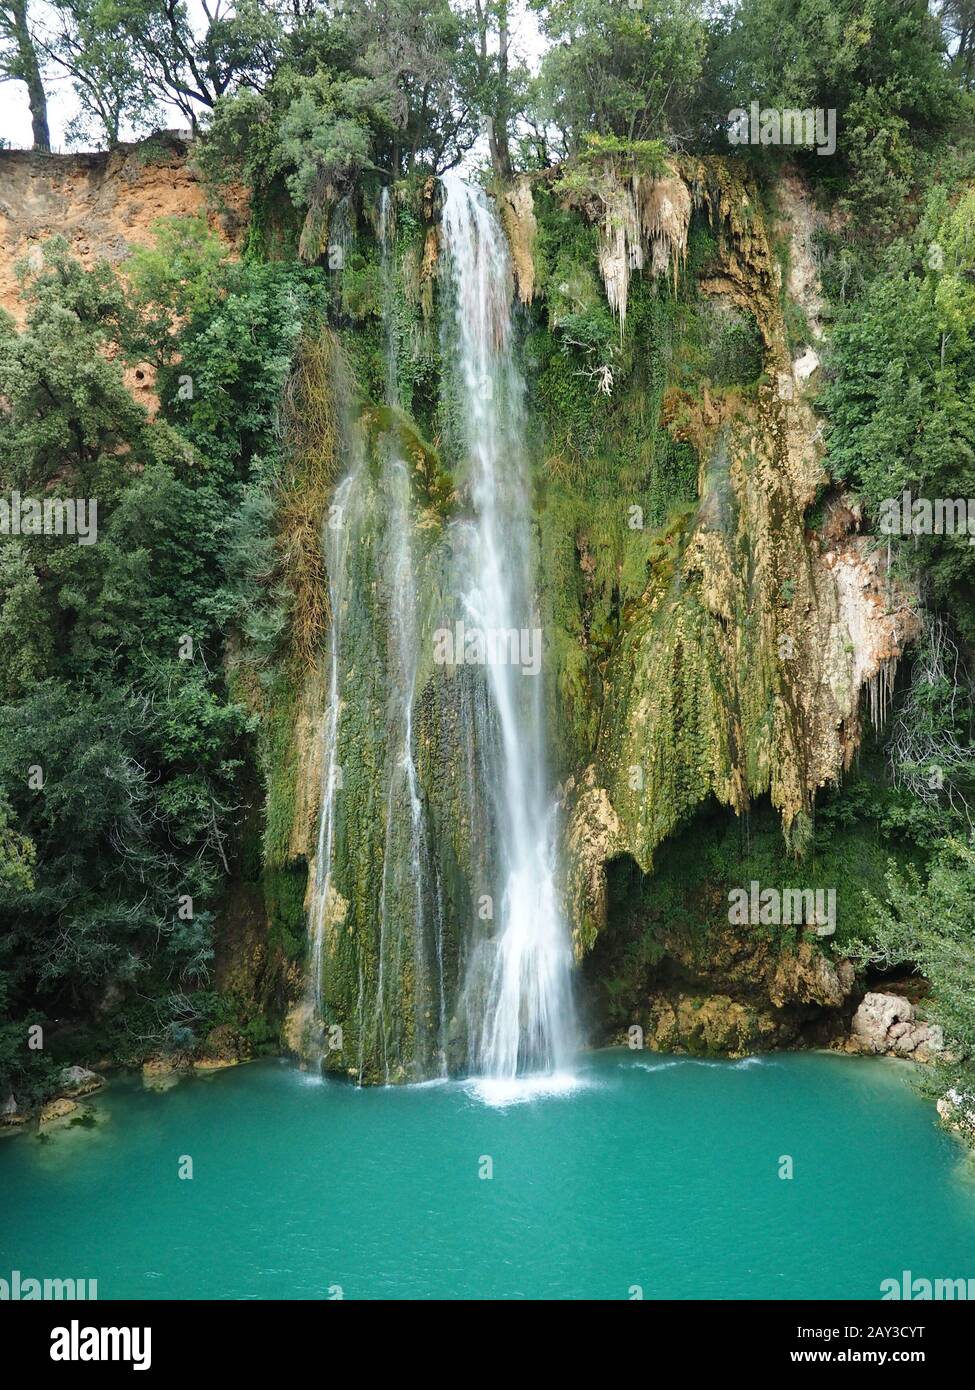 Reisestandorte in Frankreich, schöne Wasserfälle, Sillans-la-Cascade, Var, in der Region Provence-Alpen-Côte d'Azur im Südosten Frankreichs Stockfoto